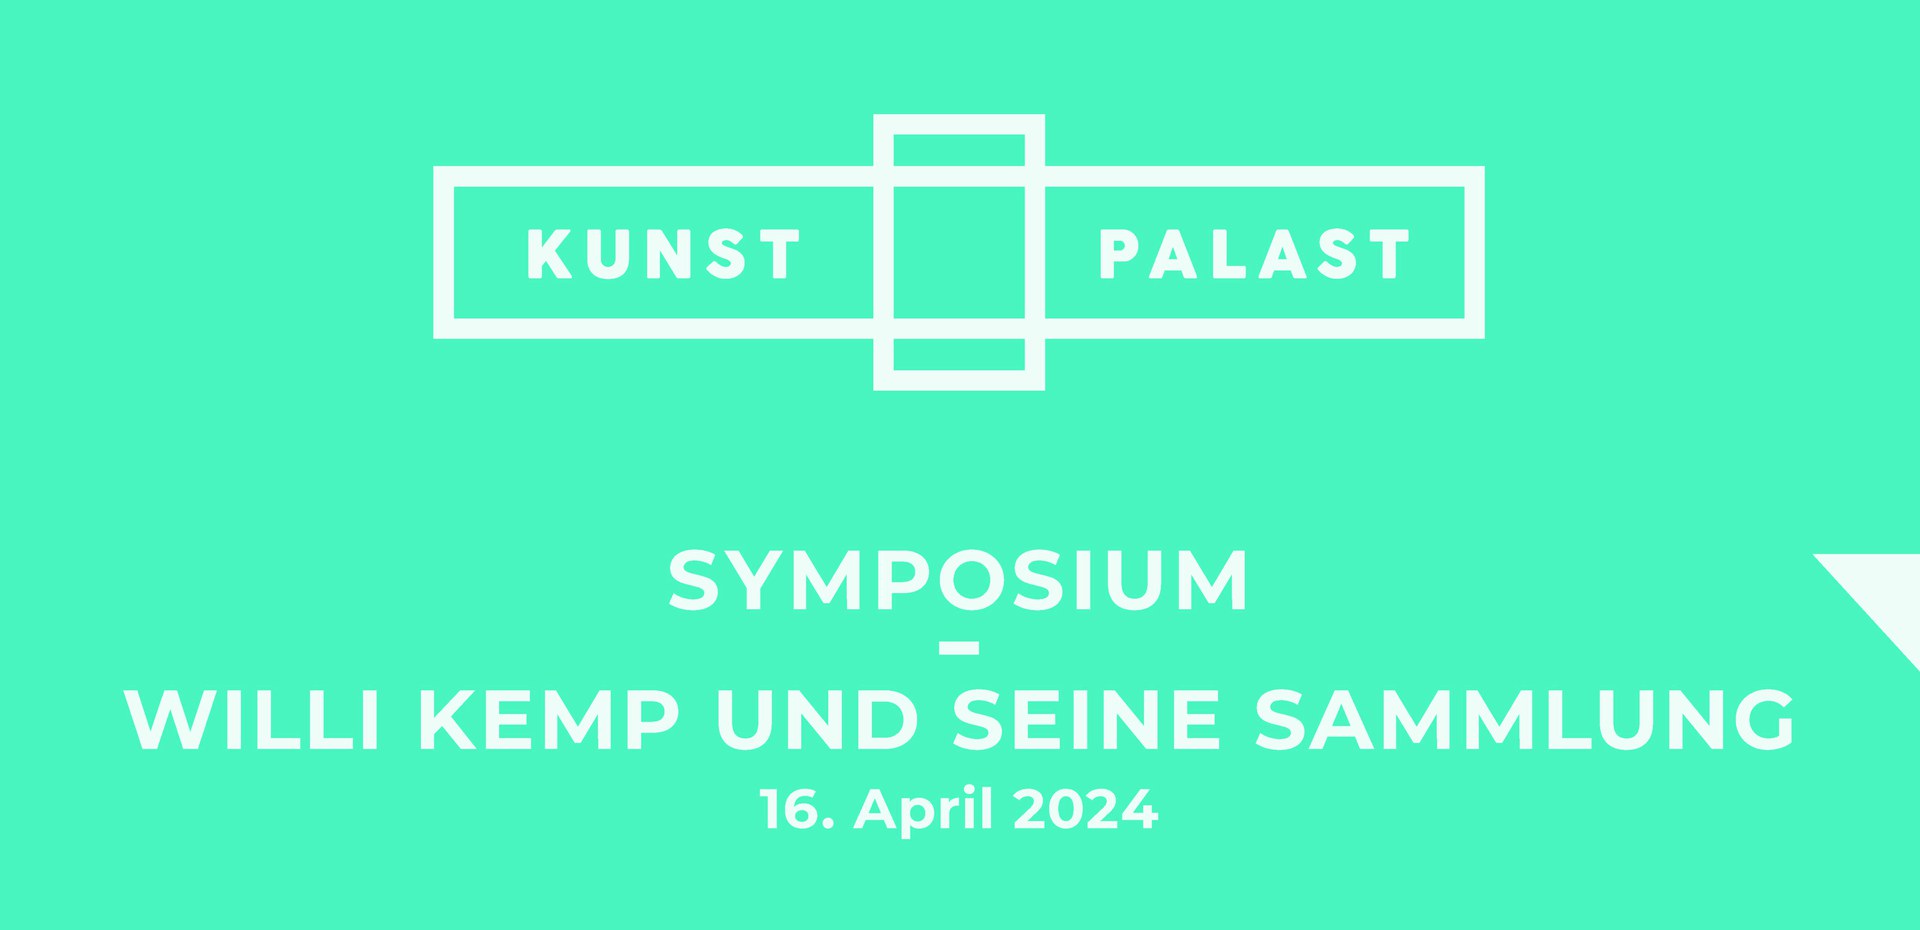 Symposium: Willi Kemp und seine Sammlung